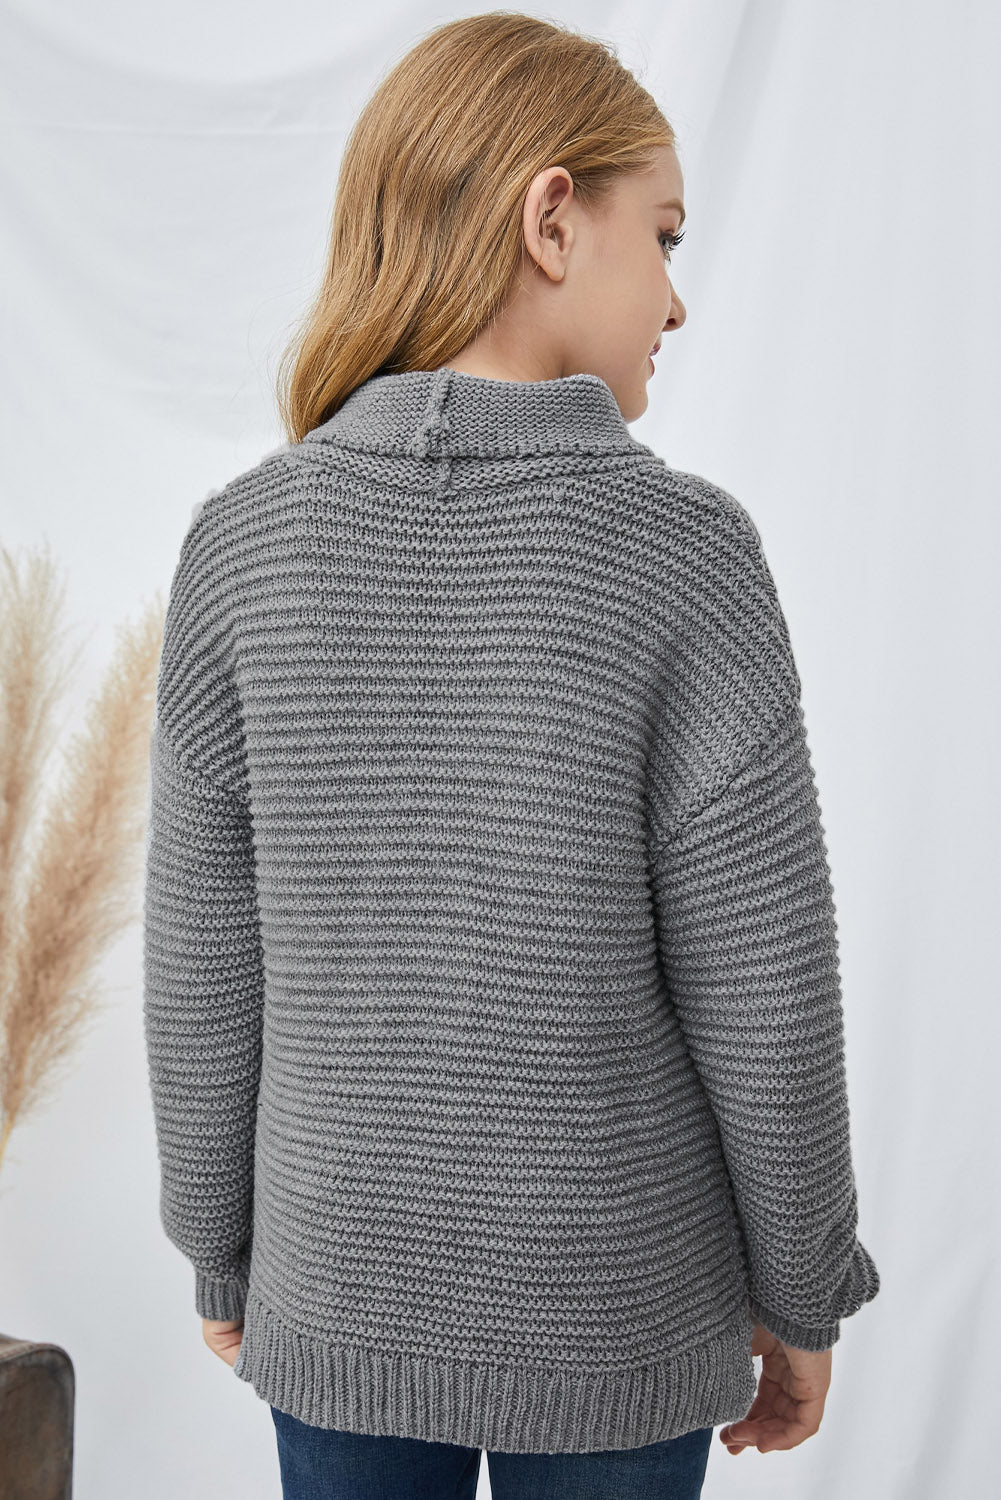 Girls Dropped Shoulder Turtleneck Sweater_19